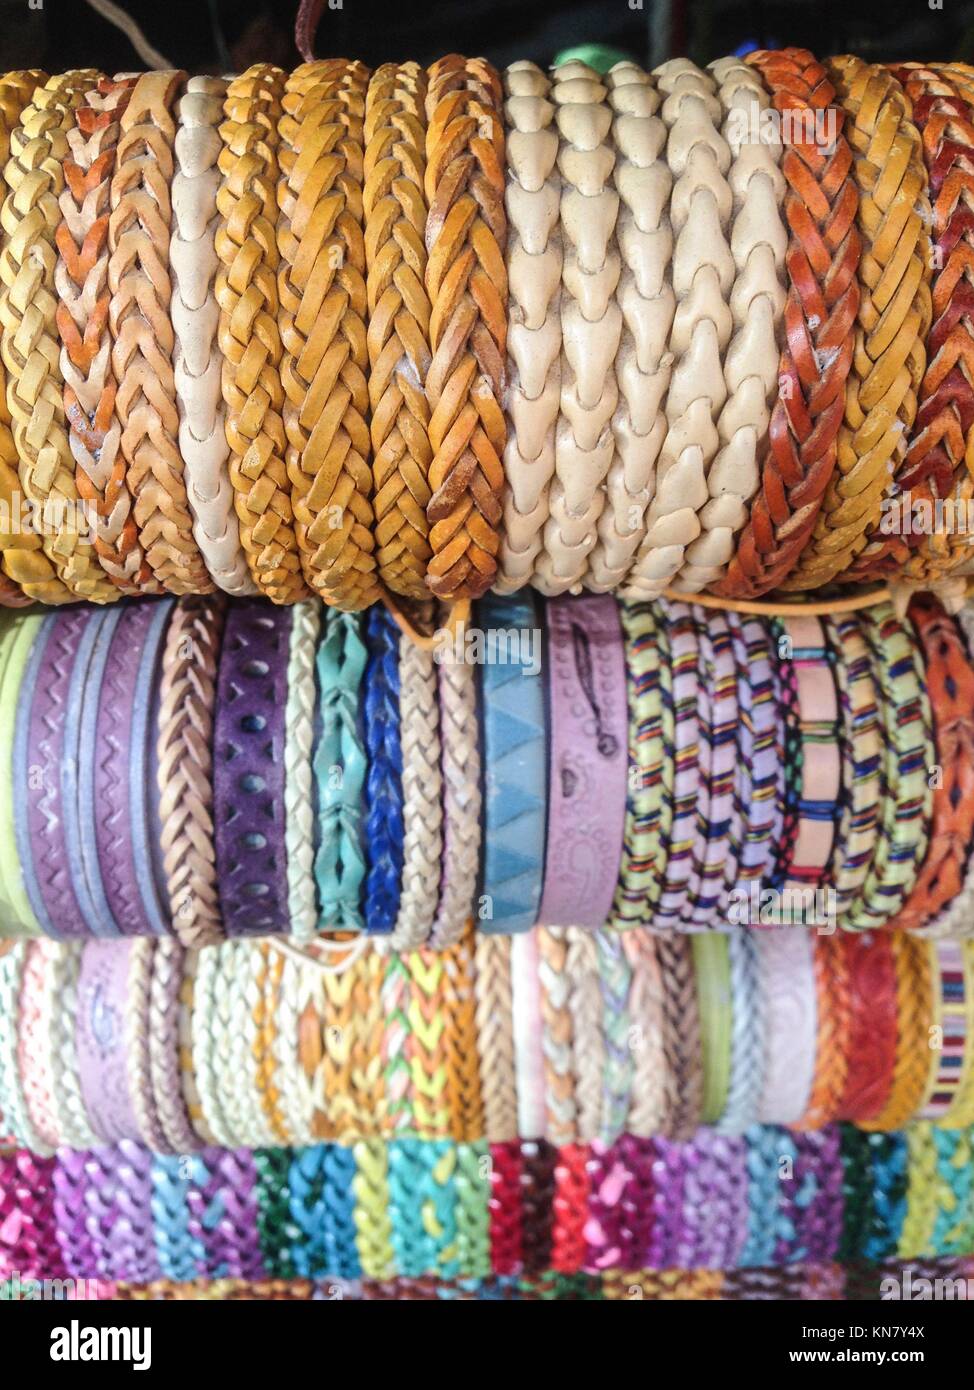 Afficher plein de bracelets colorés de l'artisanat. Banque D'Images